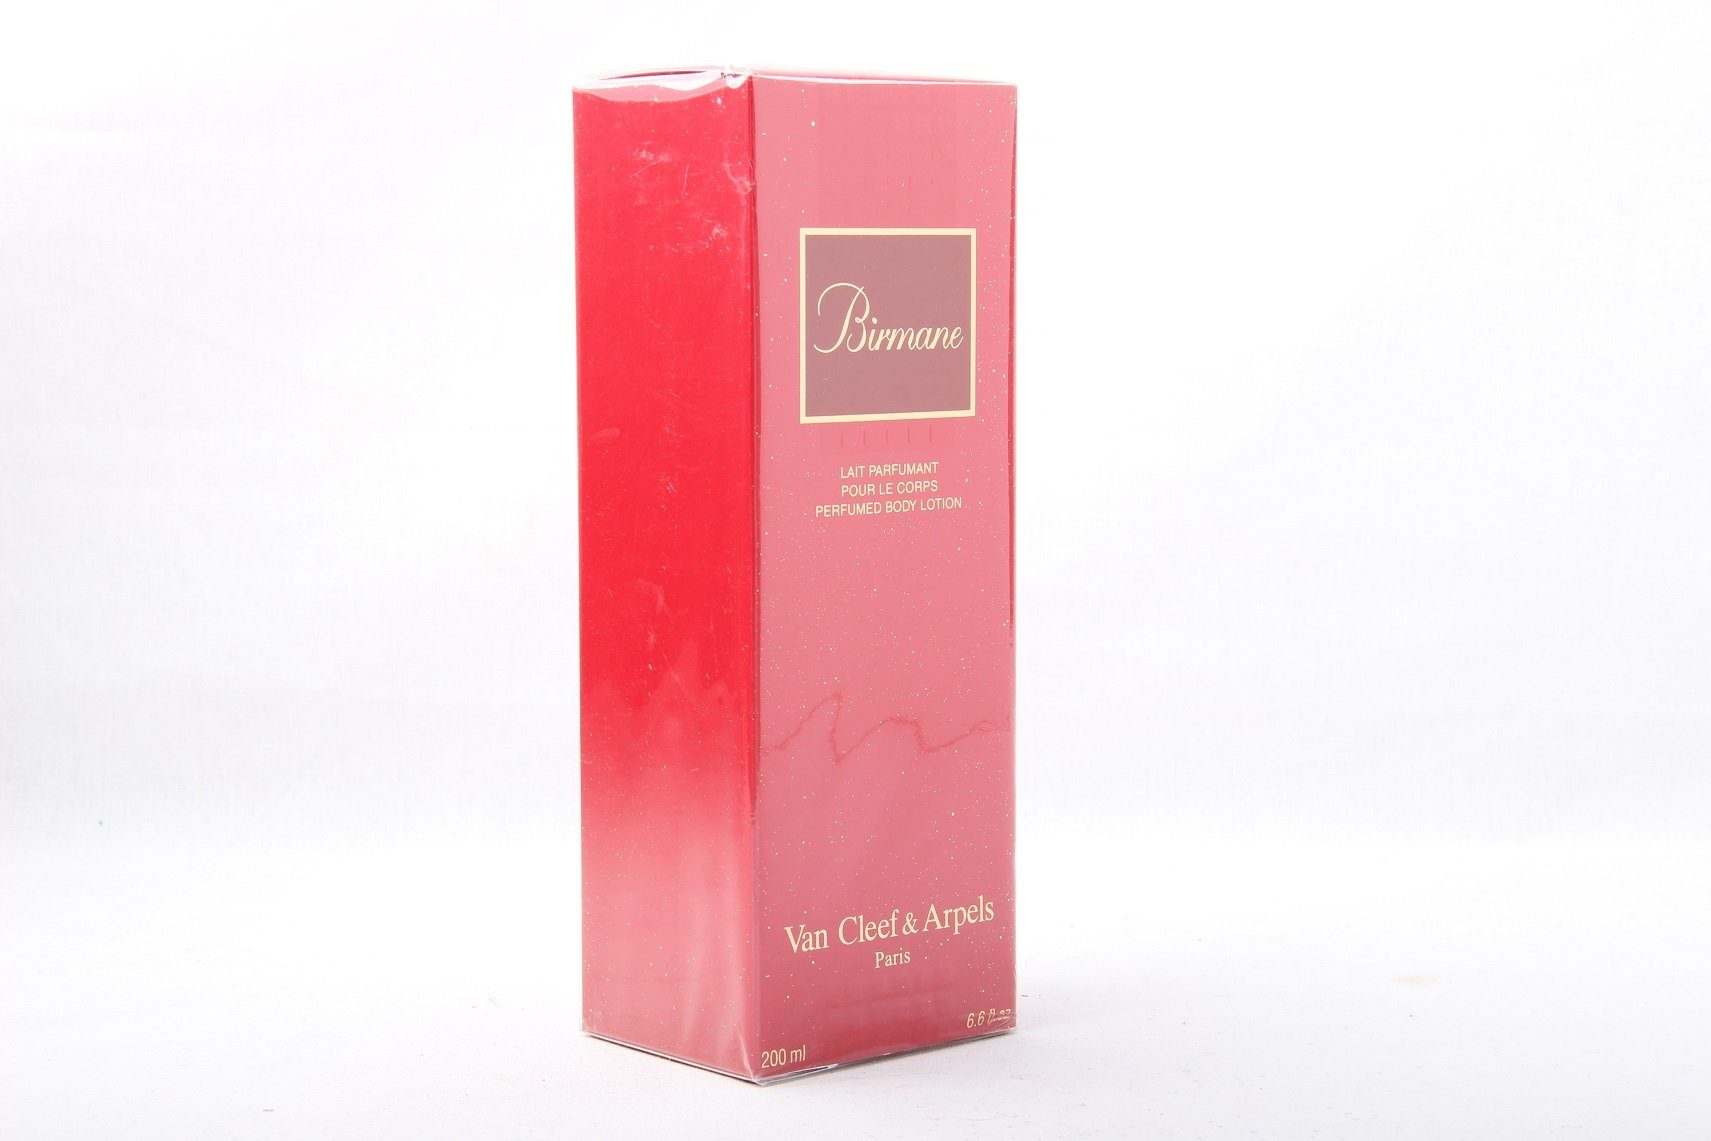 Van Cleef & Arpels Körperpflegeduft Van Cleef & Arpels Birmane Perfumed Body Lotion 200ml